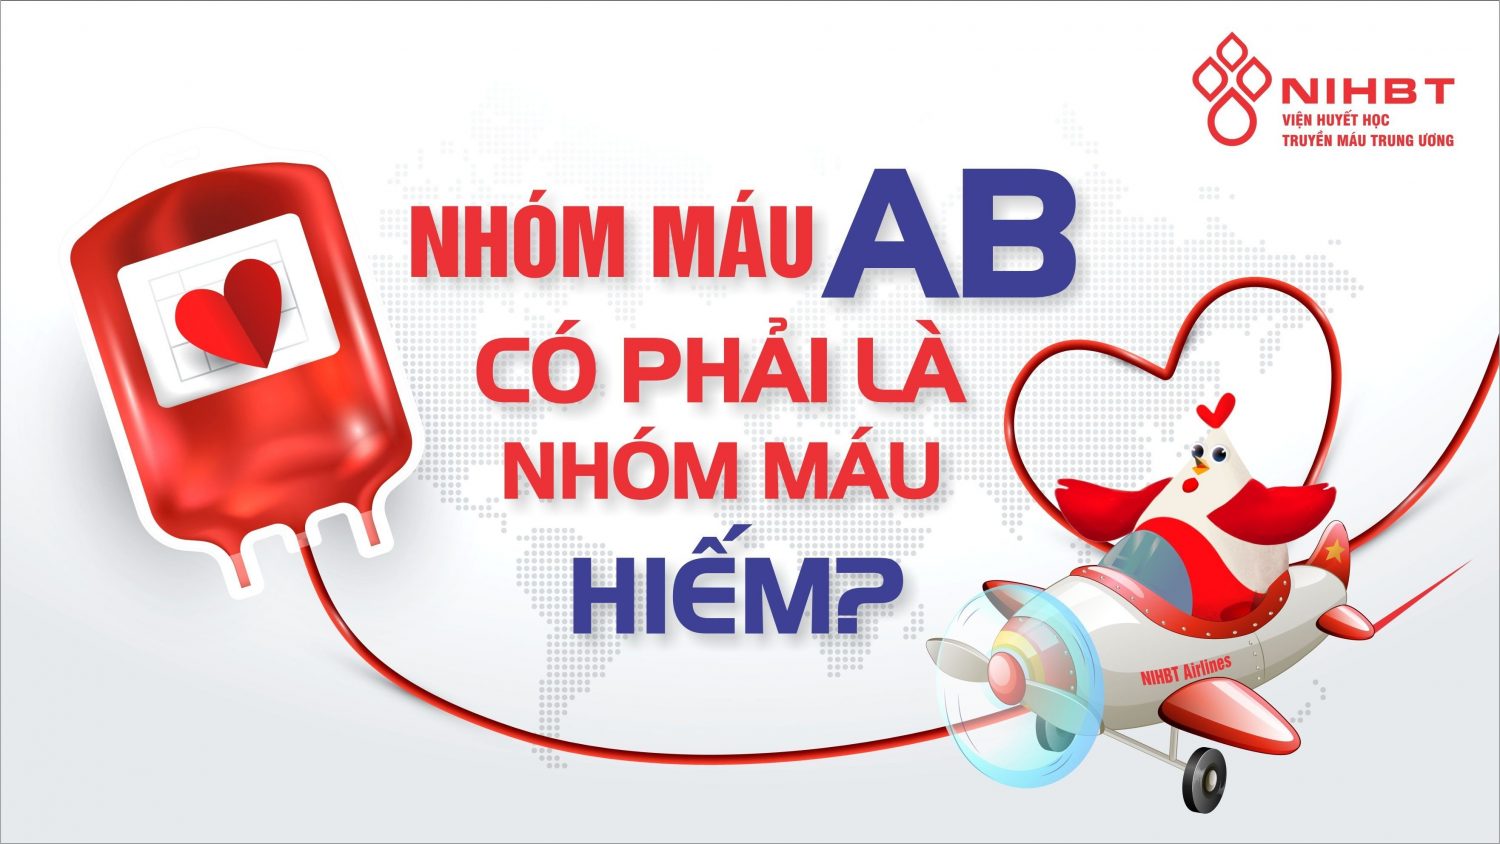 Nhóm máu nào có ưu điểm về thể chất và bảo vệ sức khỏe tốt hơn?
